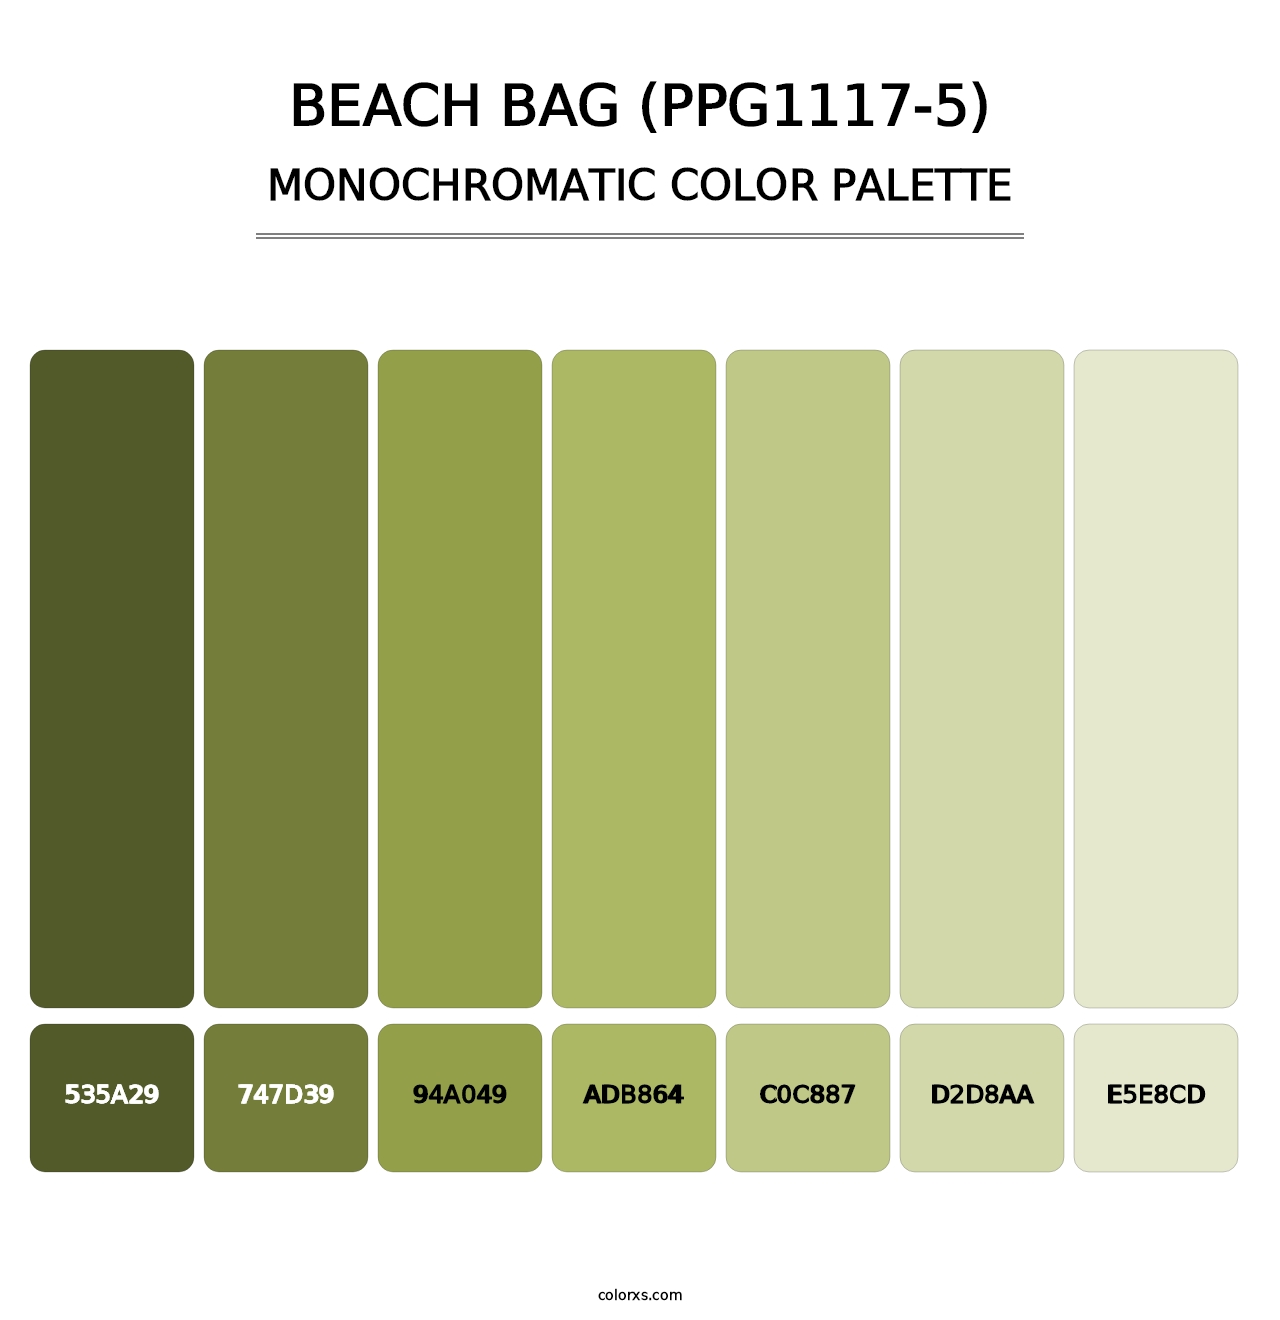 Beach Bag (PPG1117-5) - Monochromatic Color Palette